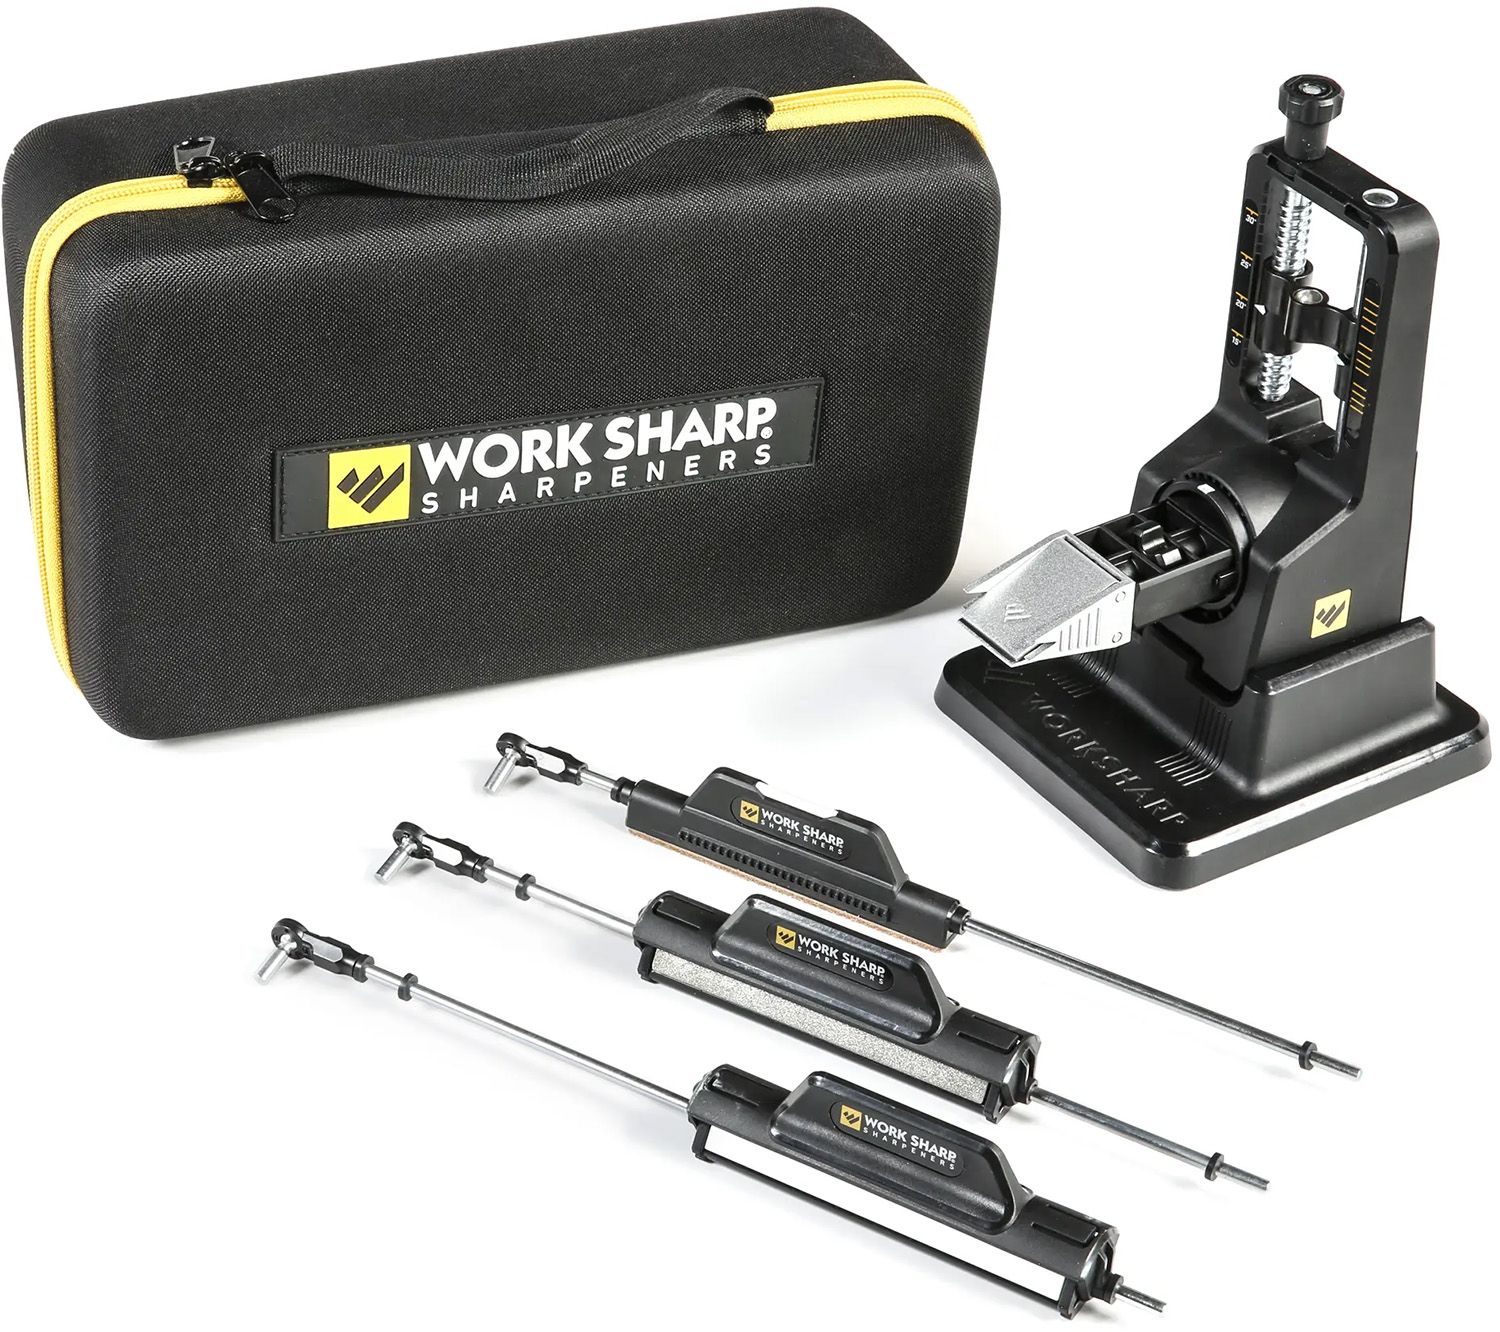 Abrasive Rod Holder for Work Sharp Precision Adjust Sharpening System